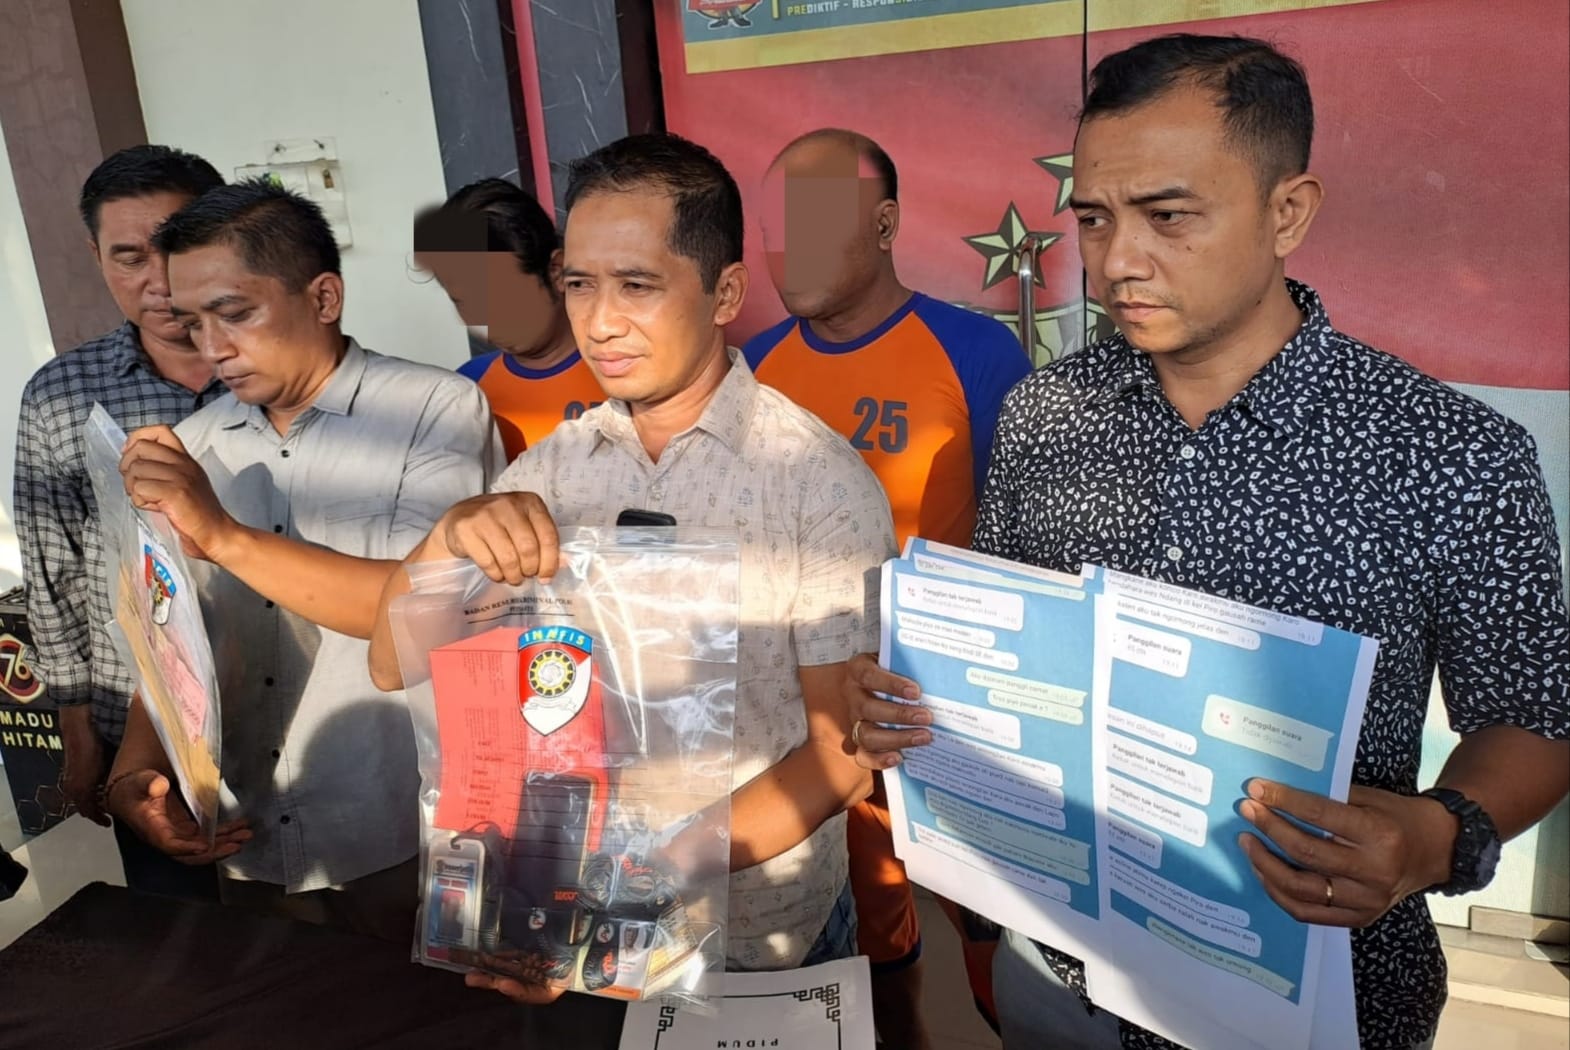 Terjaring OTT 2 Oknum Wartawan Diringkus Polisi Usai Peras Perangkat Desa di Jombang